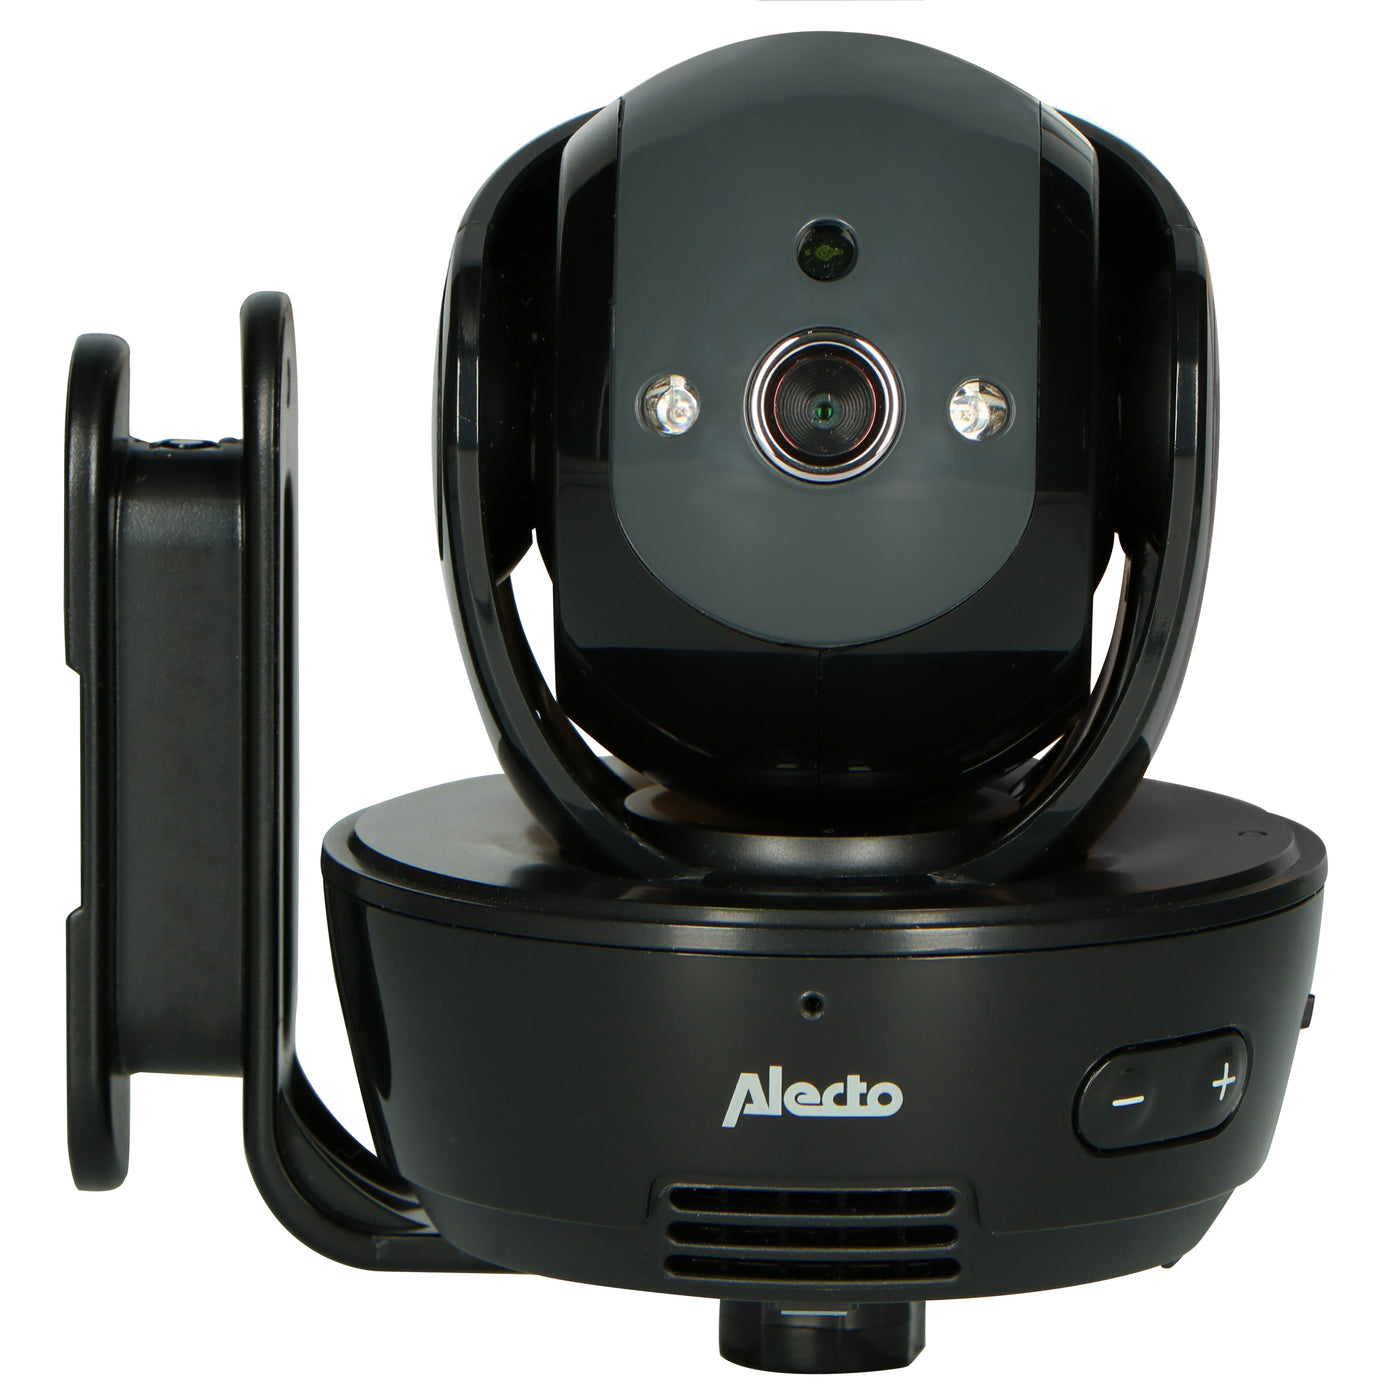 Babyphone avec caméra et écran couleur 3,5 pouces : Alecto